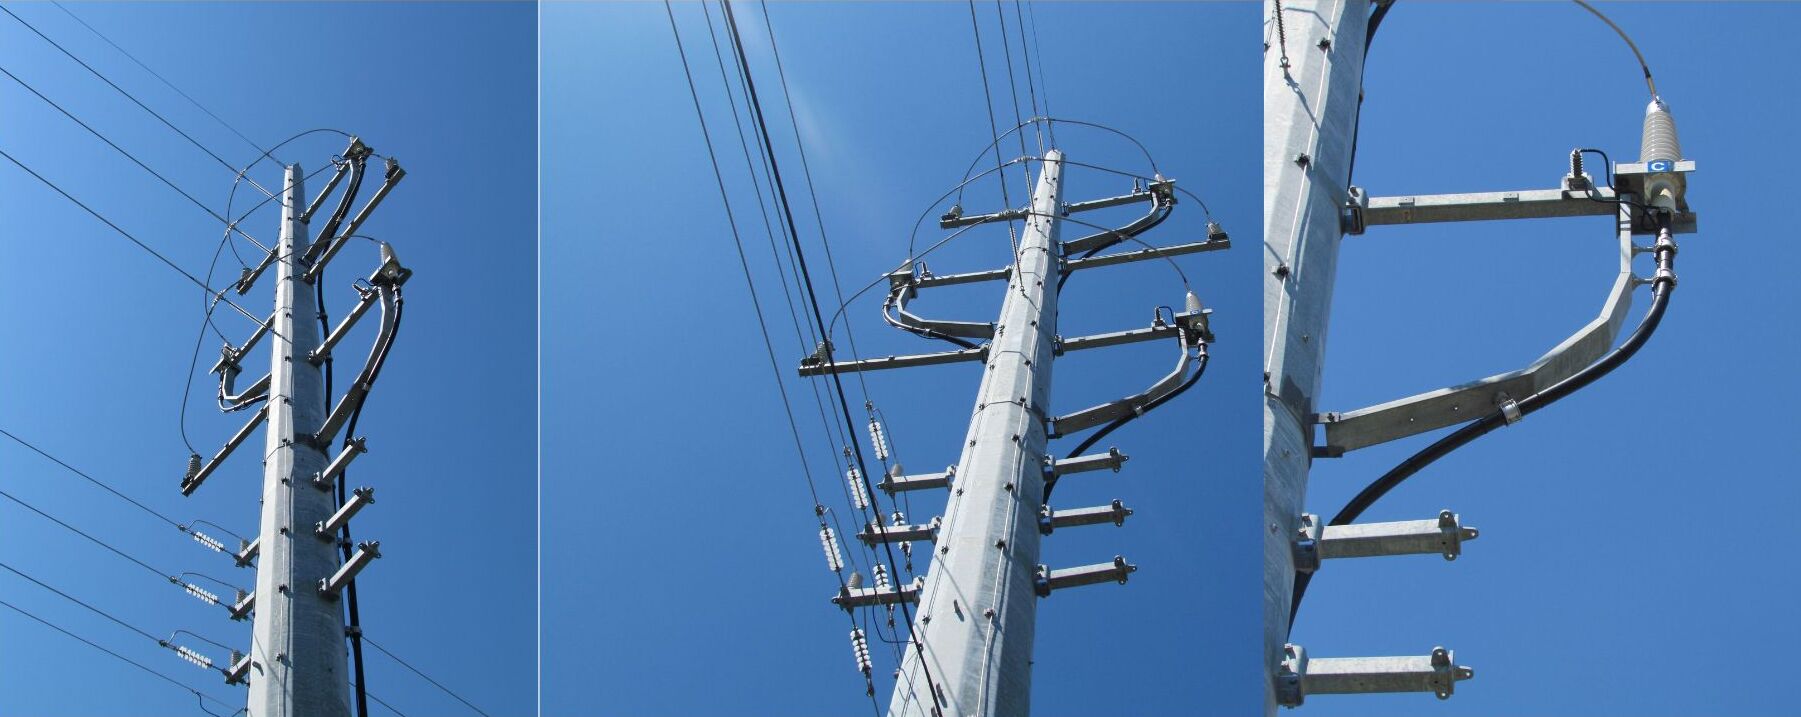 Usos de los cables eléctricos - DIELECTRIC